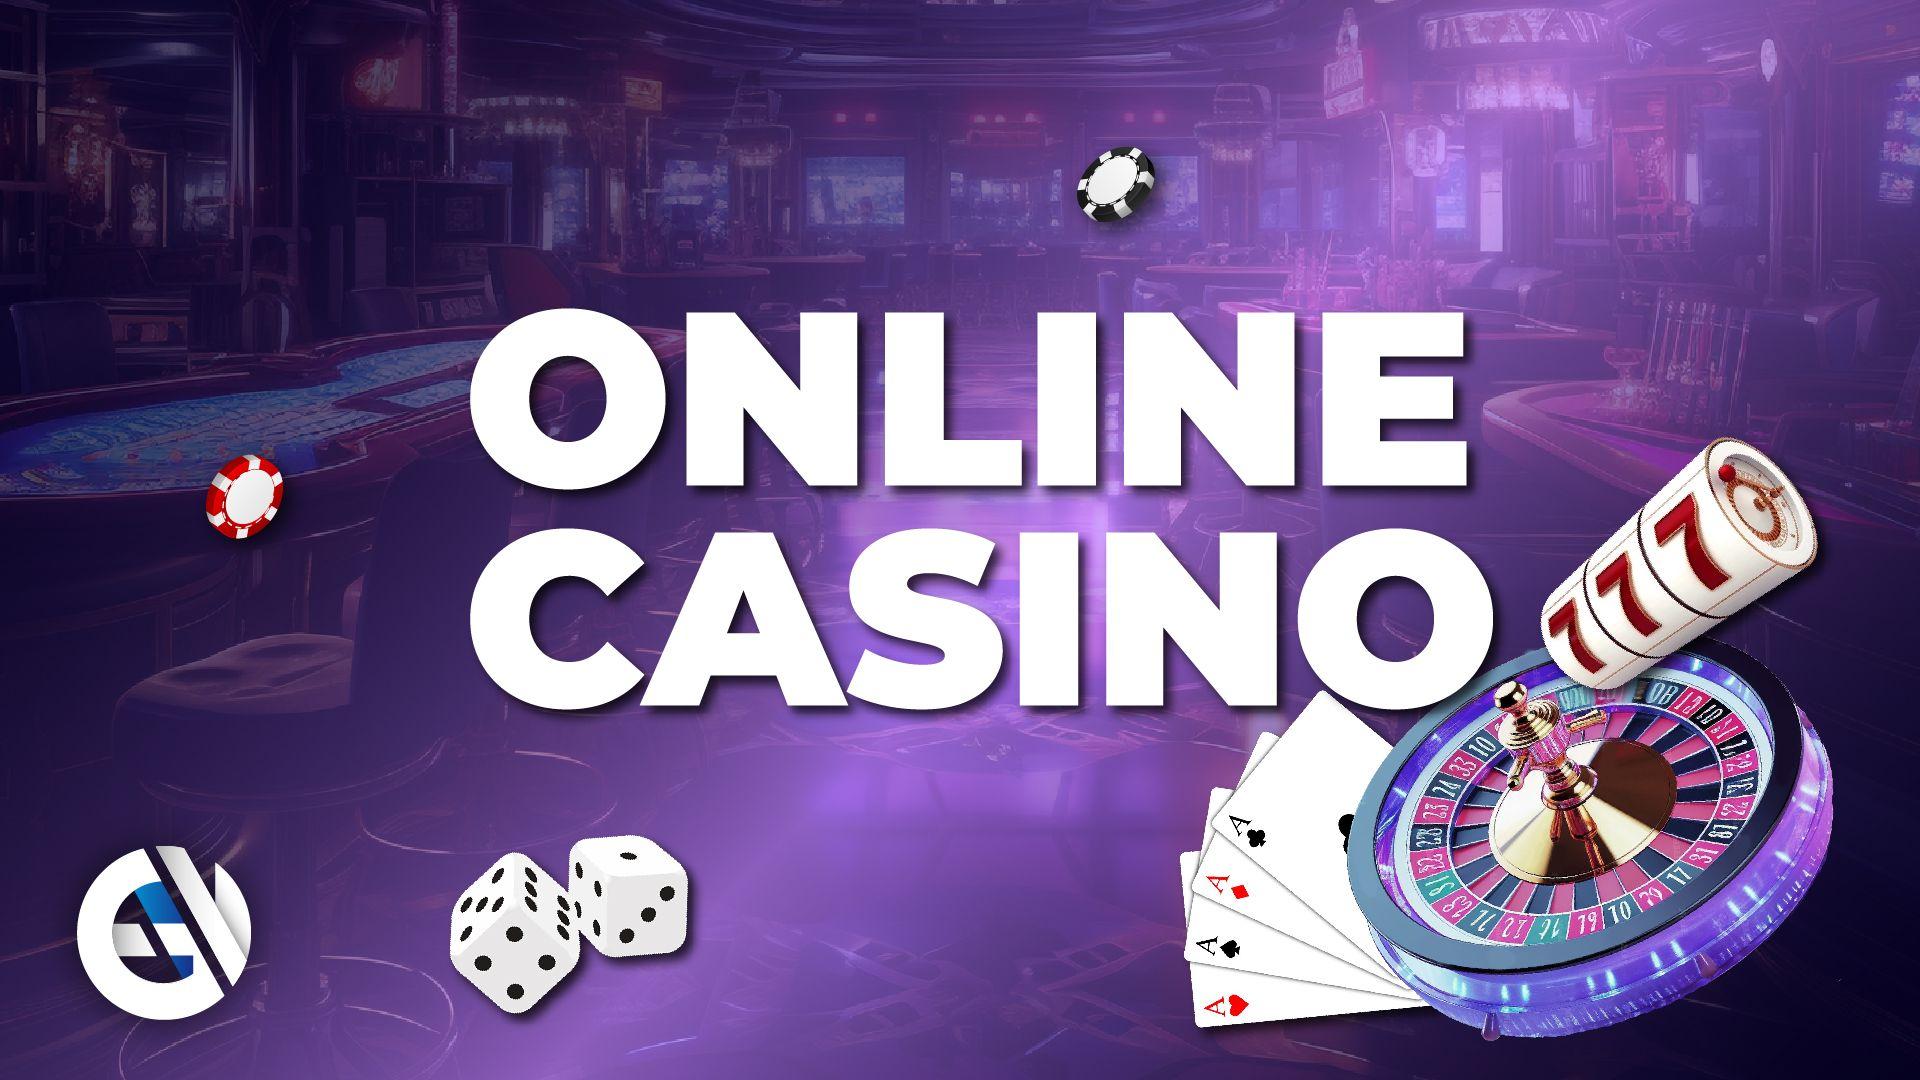 Los principios éticos en el comportamiento de los casinos en línea son "reglas tácitas"